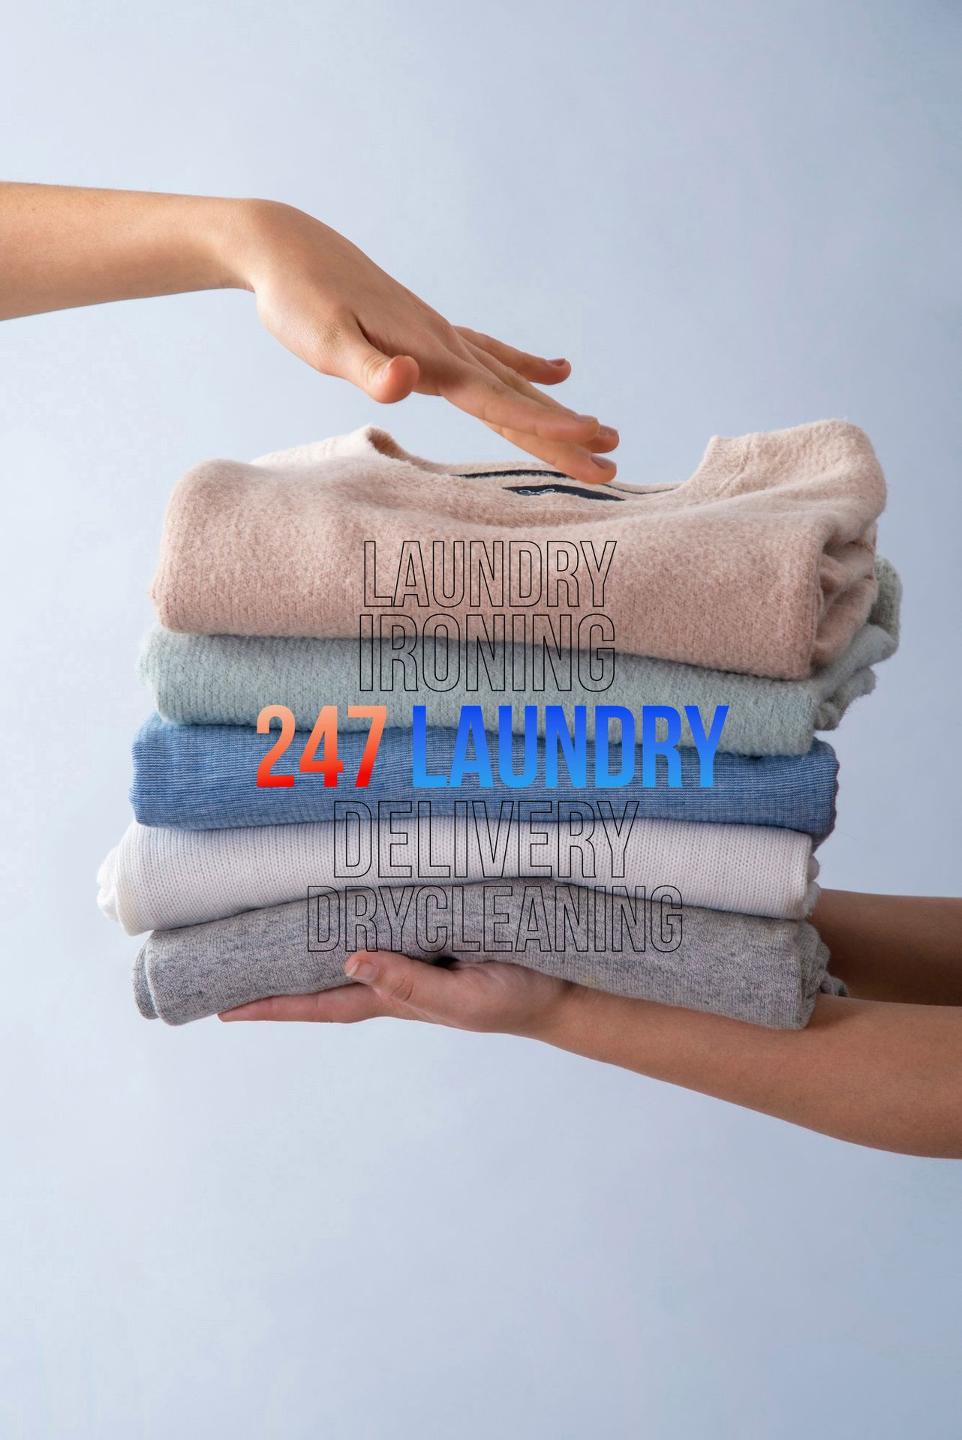 Giặt ủi 247 cung cấp dịch vụ giặt ủi cao cấp chuyên nghiệp cho quần áo, đồ vải của bạn và gia đình. Đa dang dịch vụ từ giặt sấy cơ bản đến giặt ủi cao cấp phù hợp với từng loại chất liệu quần áo, đồ vải. Đặt dịch vụ giặt ủi dễ dàng - 247 sẽ giao nhận tận nơi tới tận cửa nhà bạn.